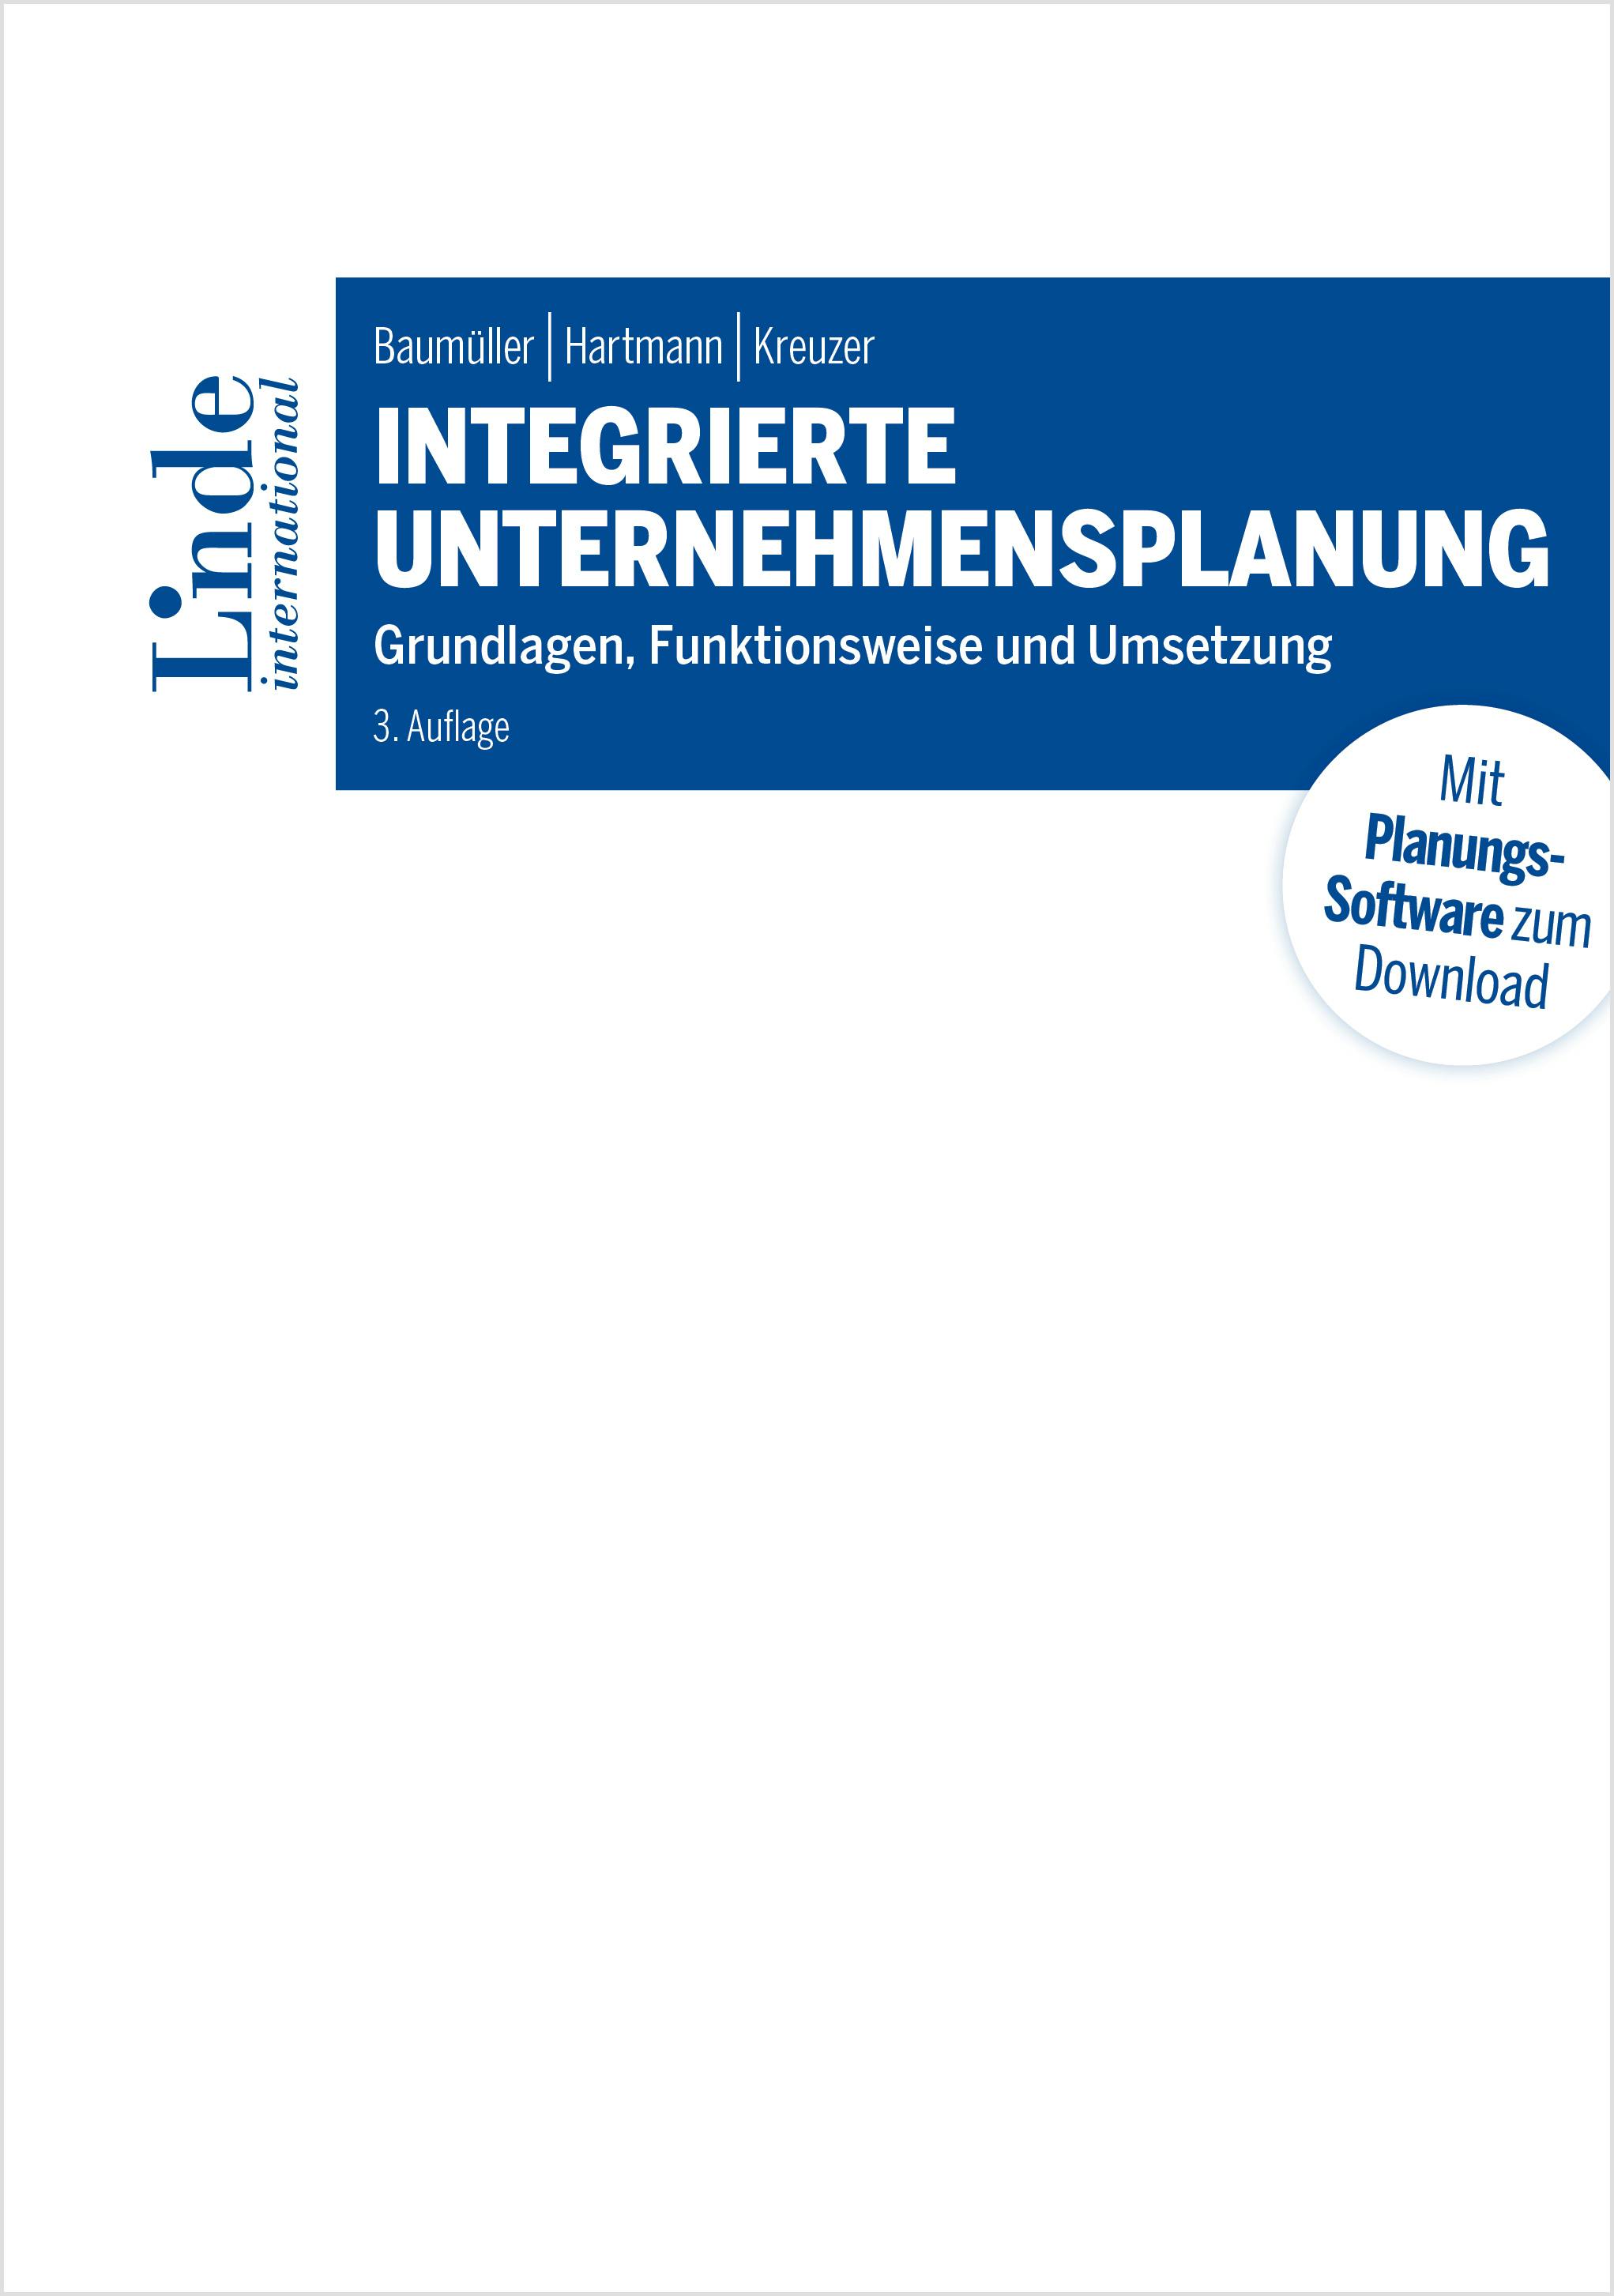 Baumüller | Hartmann | Kreuzer
Integrierte Unternehmensplanung
Grundlagen, Funktionsweise und Umsetzung
Linde Lehrbuch